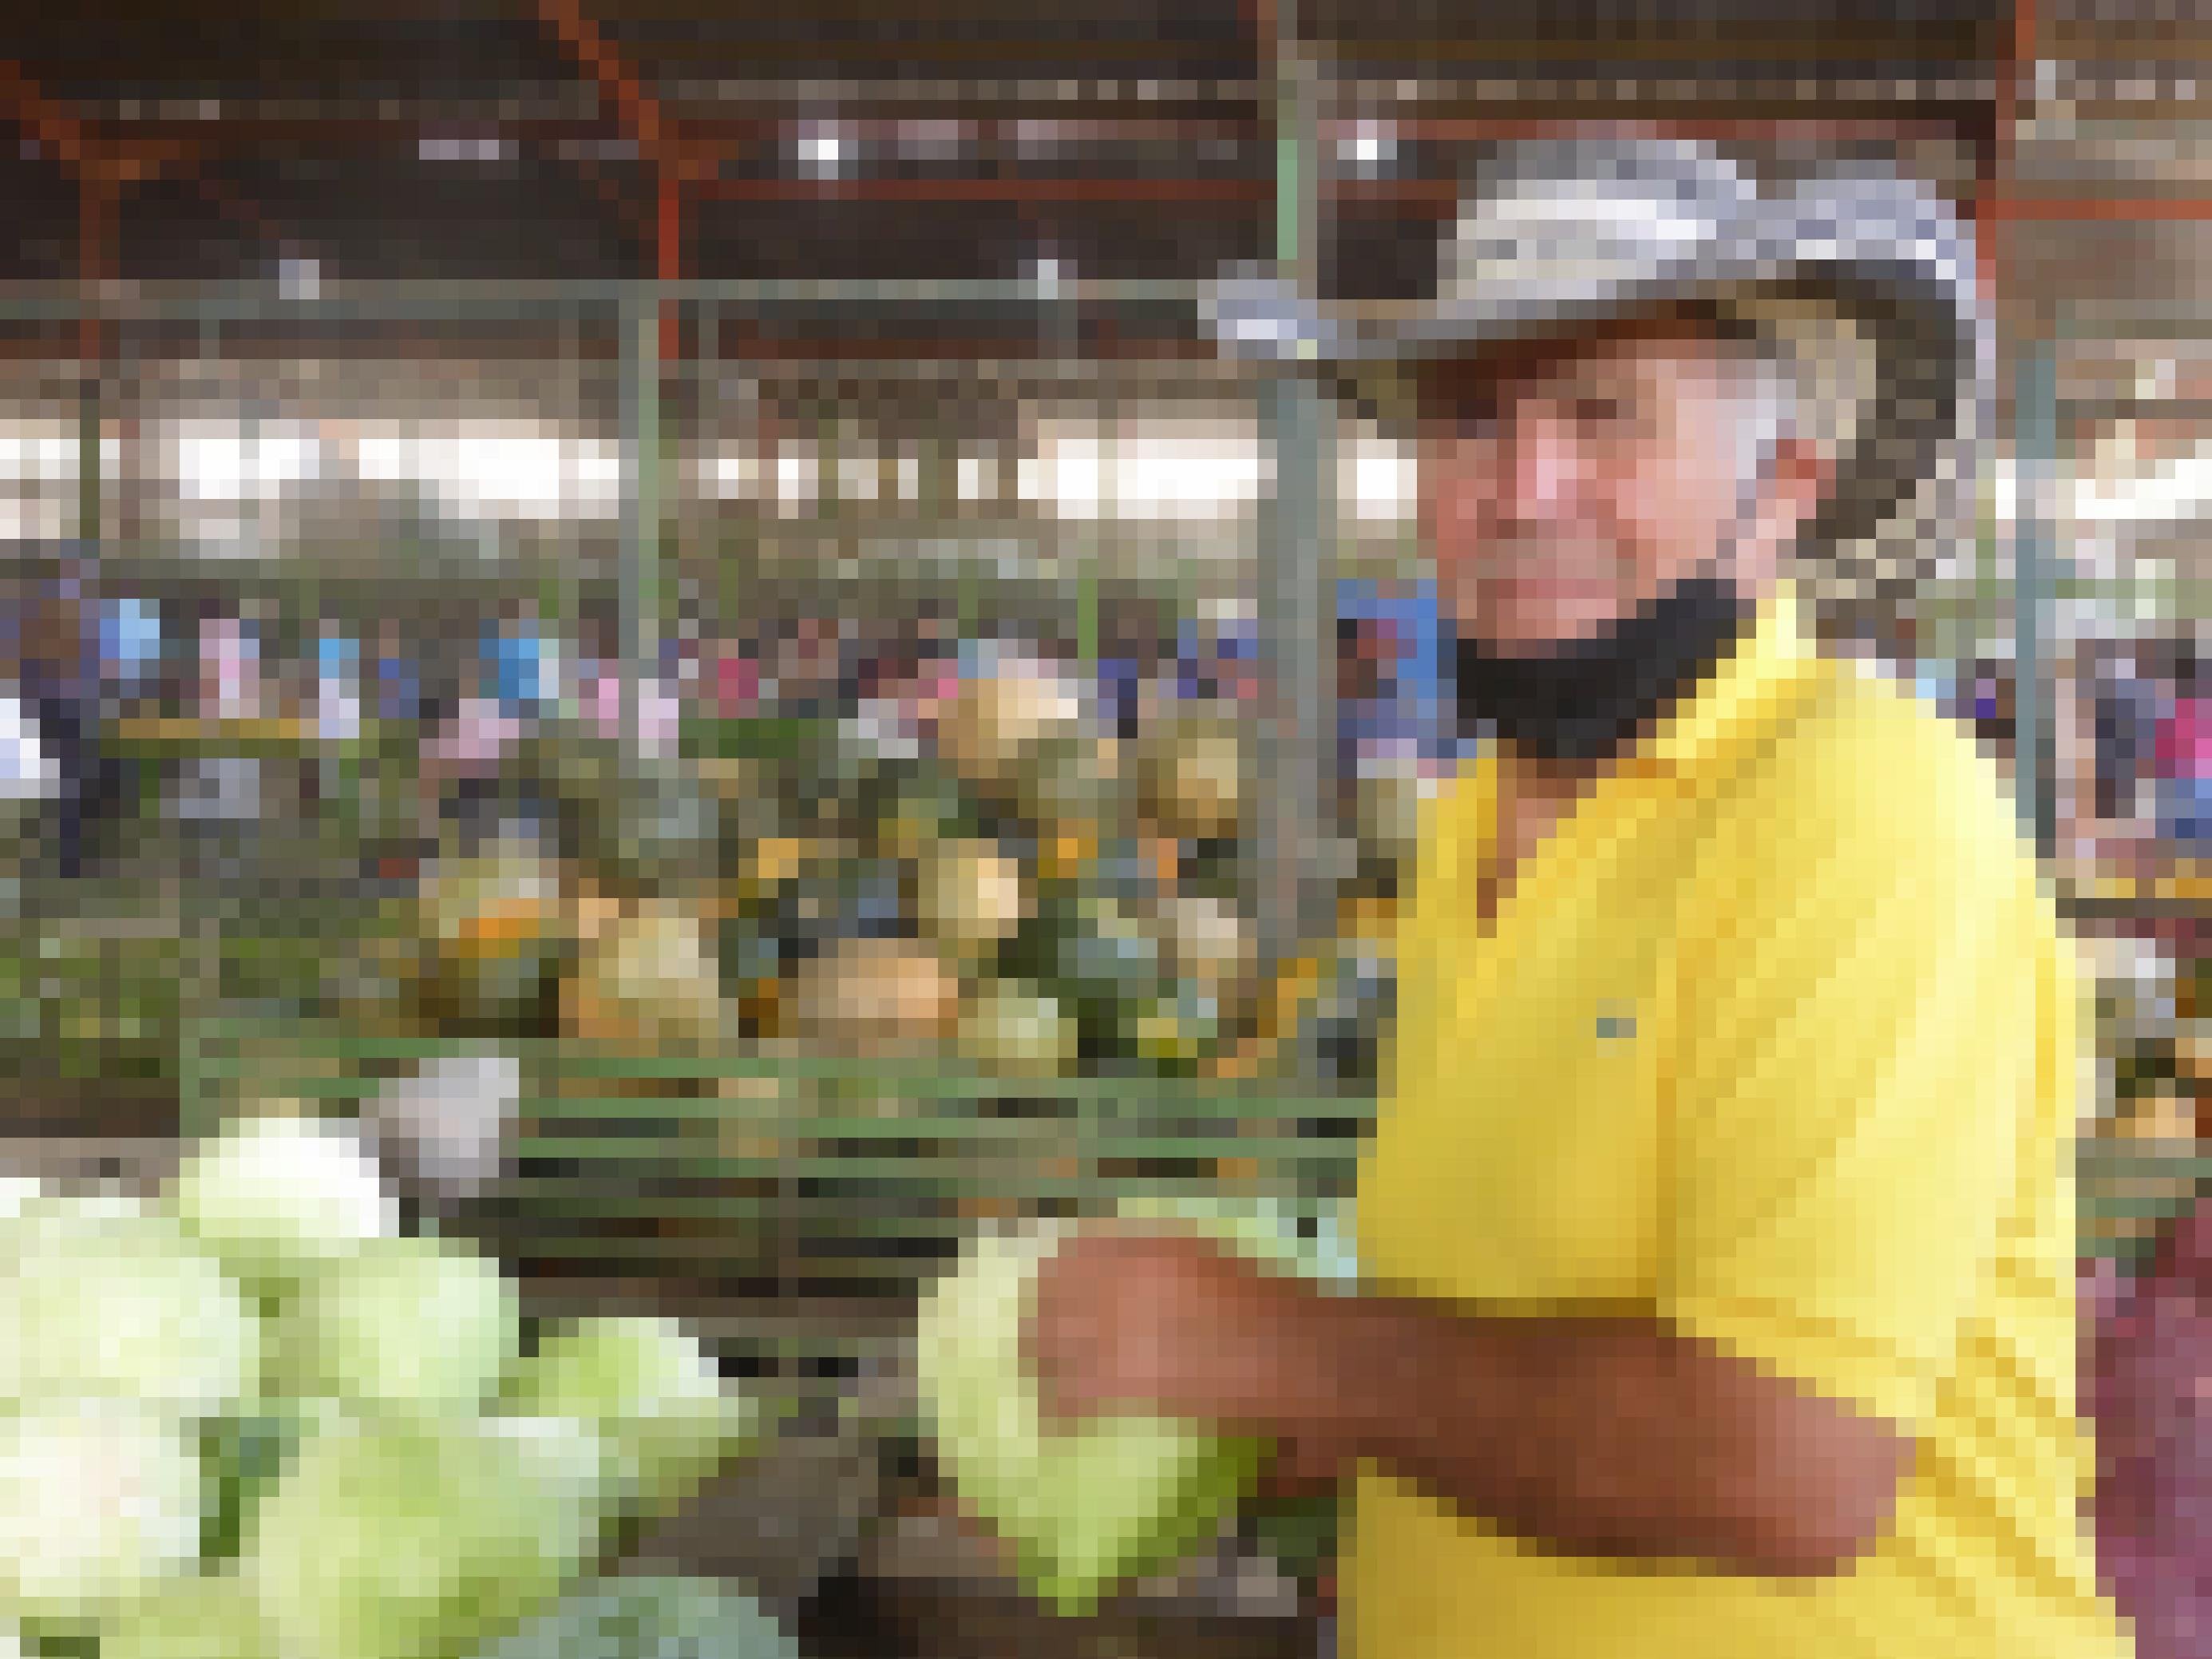 Markthalle mit Gemüseständen. Ein rund 70-jähriger Mann mit Cowboy-Hut und gelbem T-Shirt hält einen Weisskohl in der Hand und blickt in die Kamera.